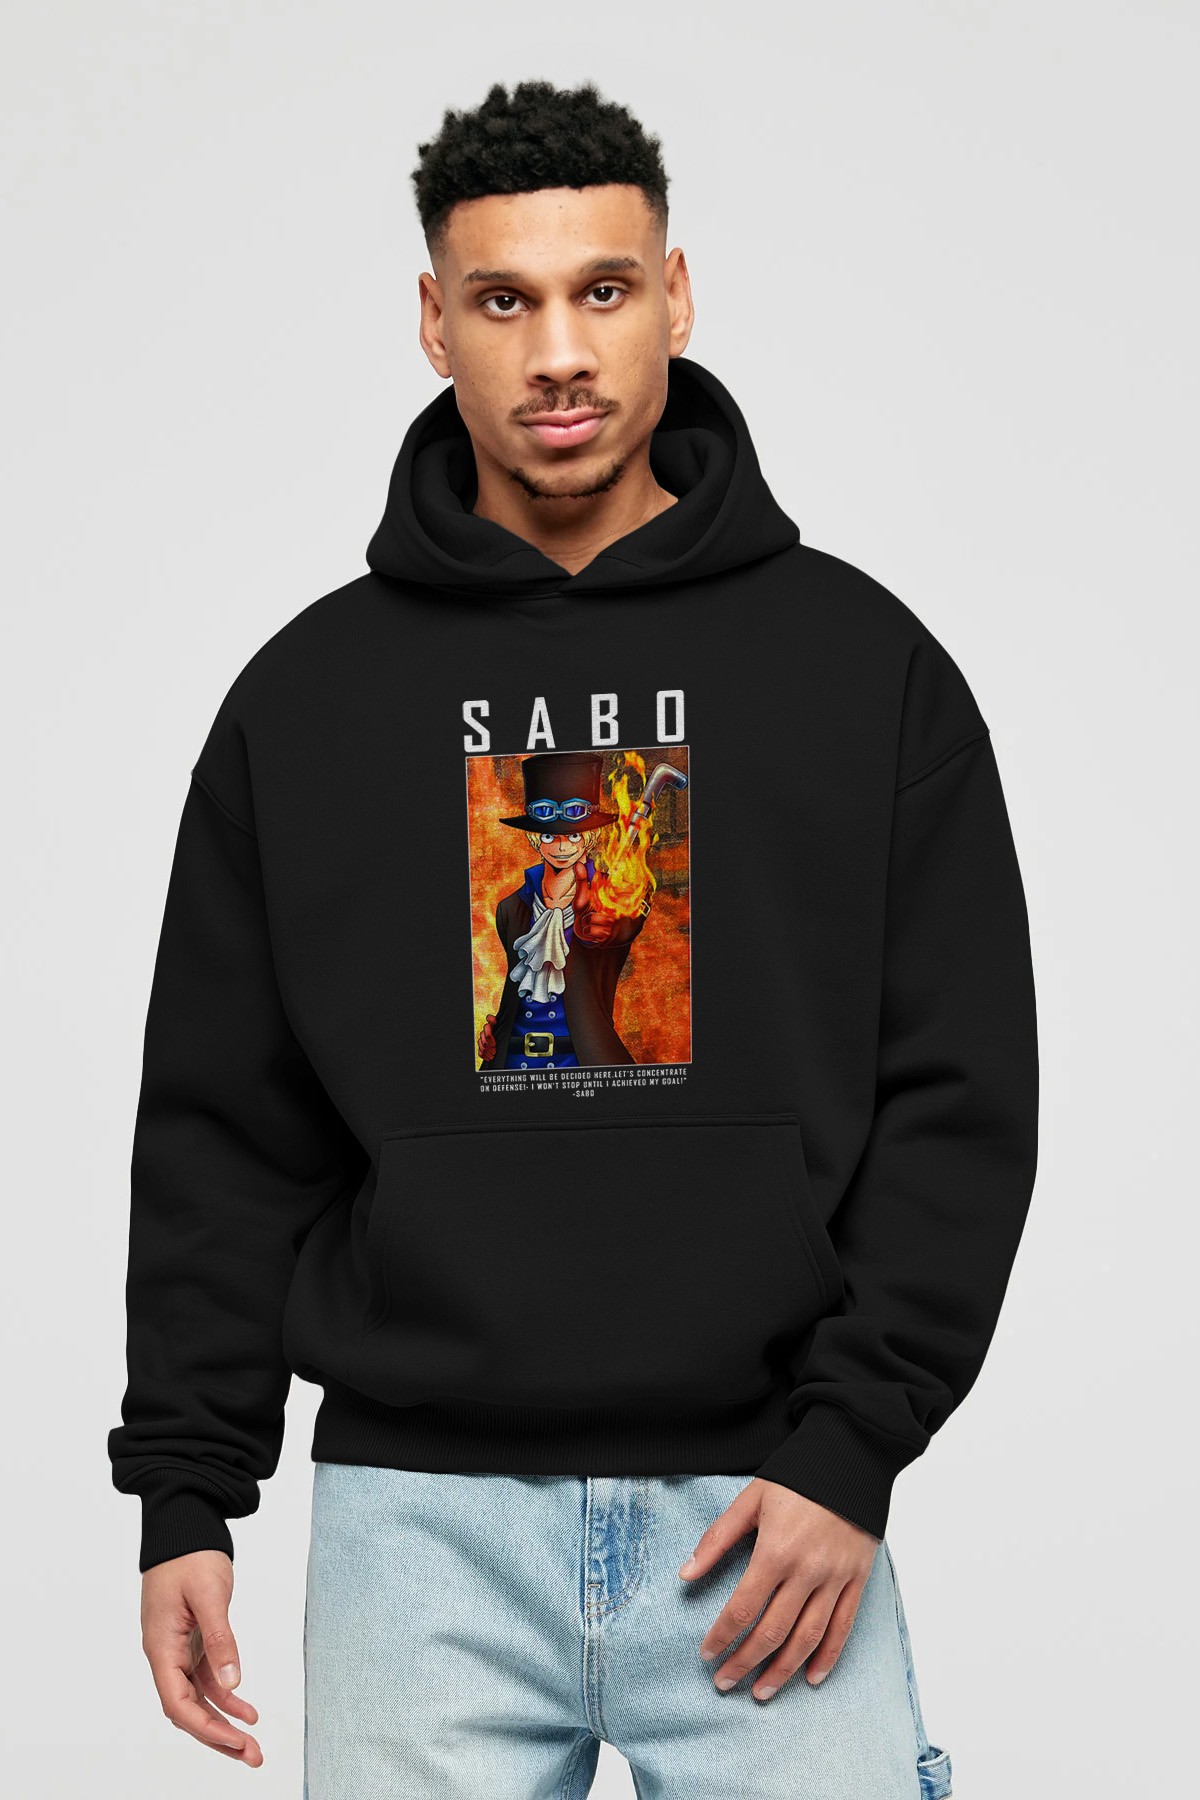 Sabo Anime Ön Baskılı Hoodie Oversize Kapüşonlu Sweatshirt Erkek Kadın Unisex